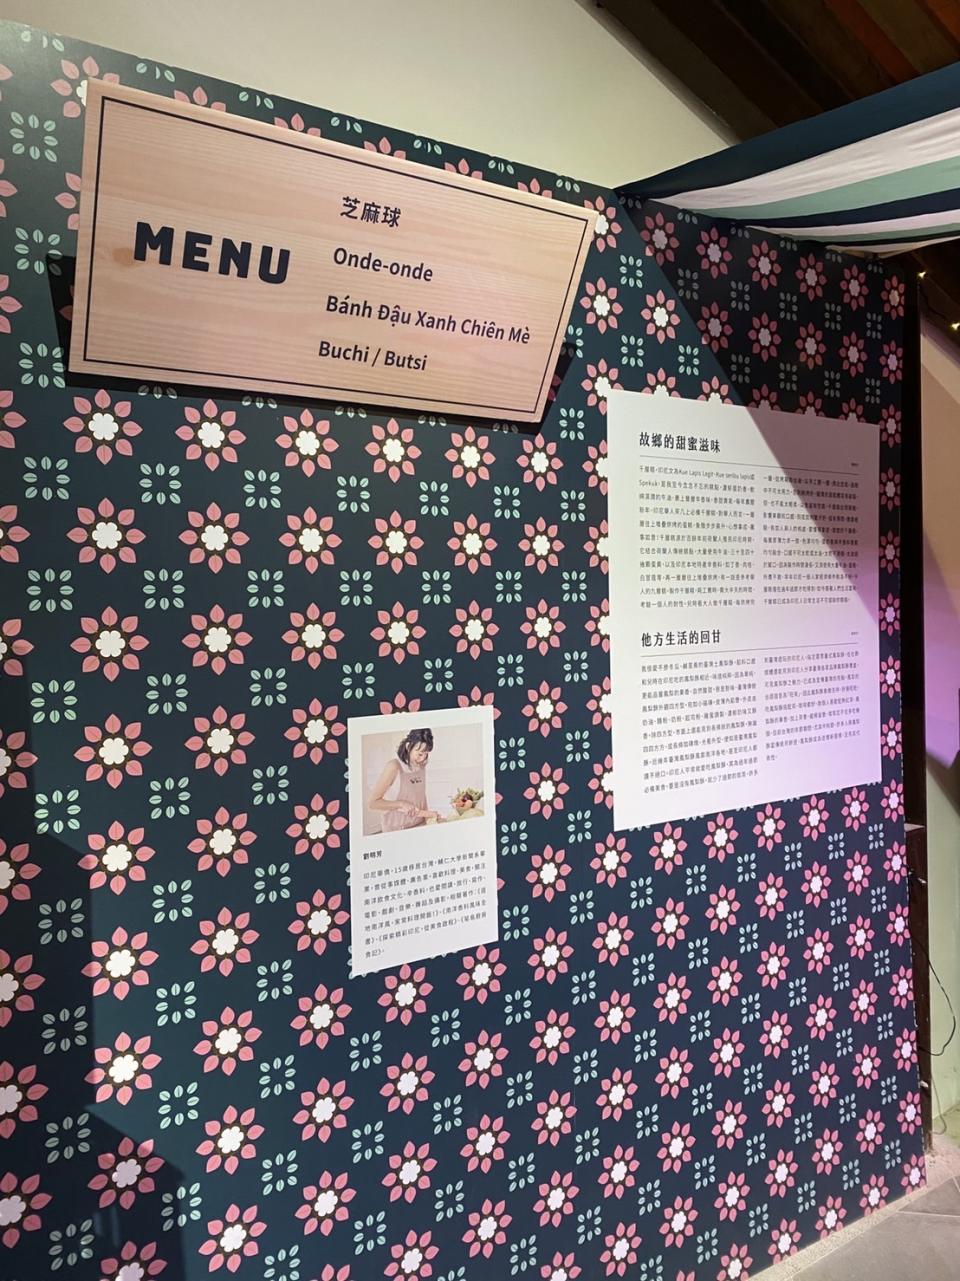 即日起到10月14日在萬華剝皮寮歷史街區舉辦「南洋特調-流動的臺灣飲食現場」展覽活動。(記者蘇瑞雯拍攝)